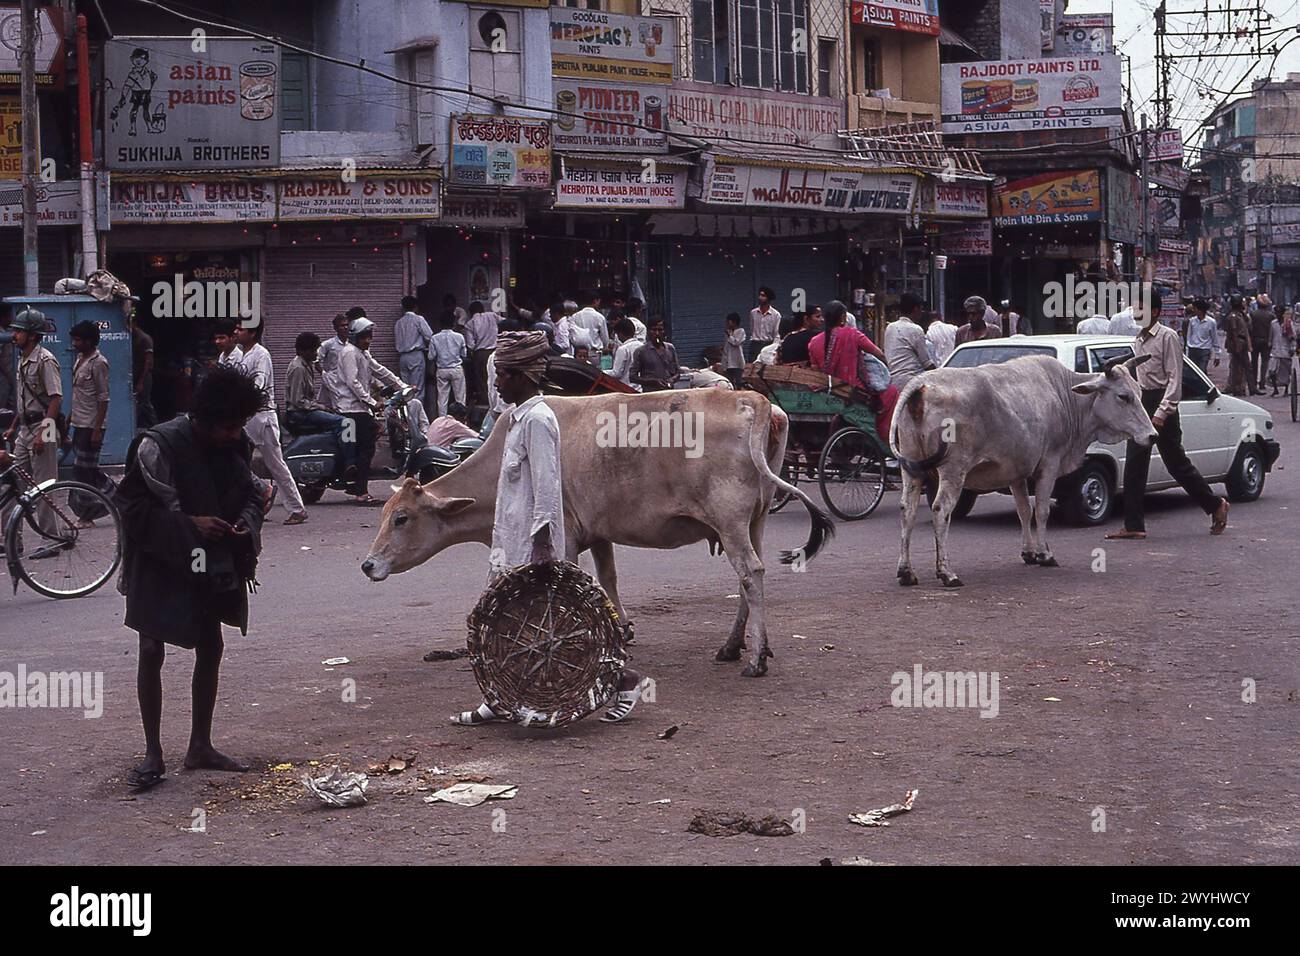 Mendiant regardant des restes de sapin sur la route avec des vaches sacrées, prise en 1992, Old Delhi district, New Delhi, Inde Banque D'Images